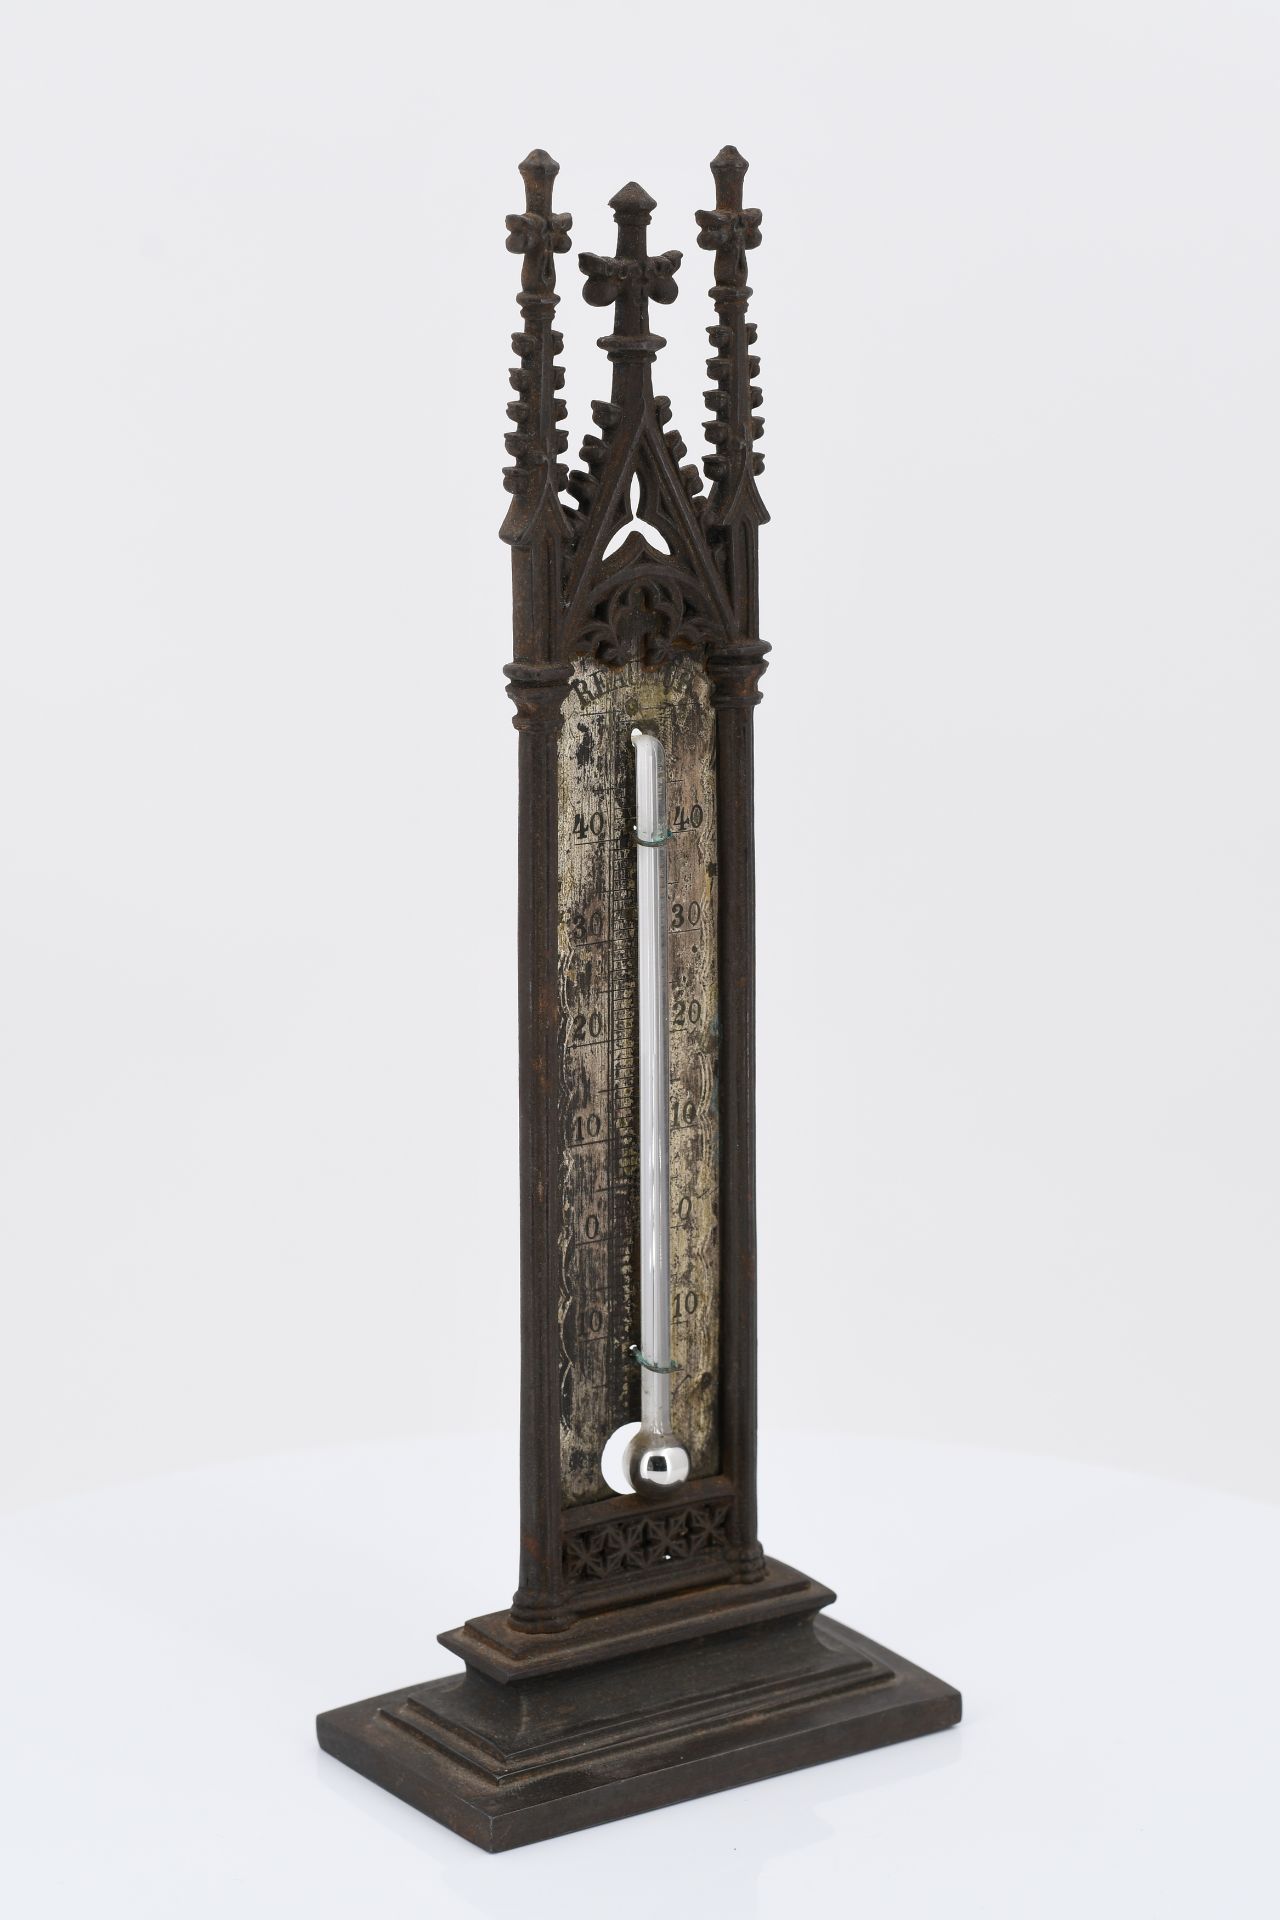 Tischthermometer mit gotischen Architekturelementen - Bild 4 aus 5